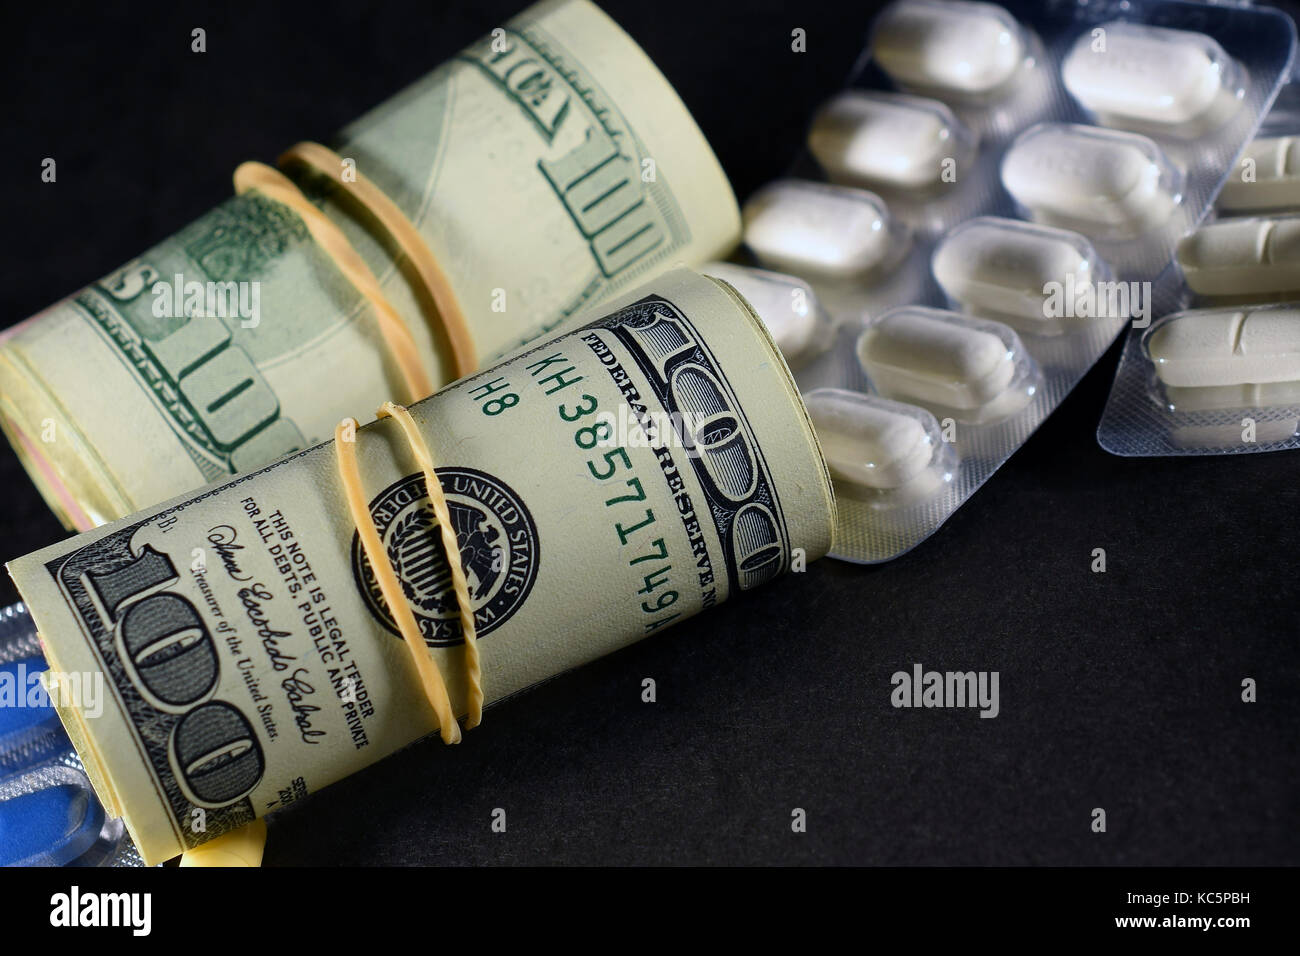 Rollen mit Geld, us-Dollar und verschreibungspflichtigen Medikamenten auf dunklem Untergrund. Stockfoto